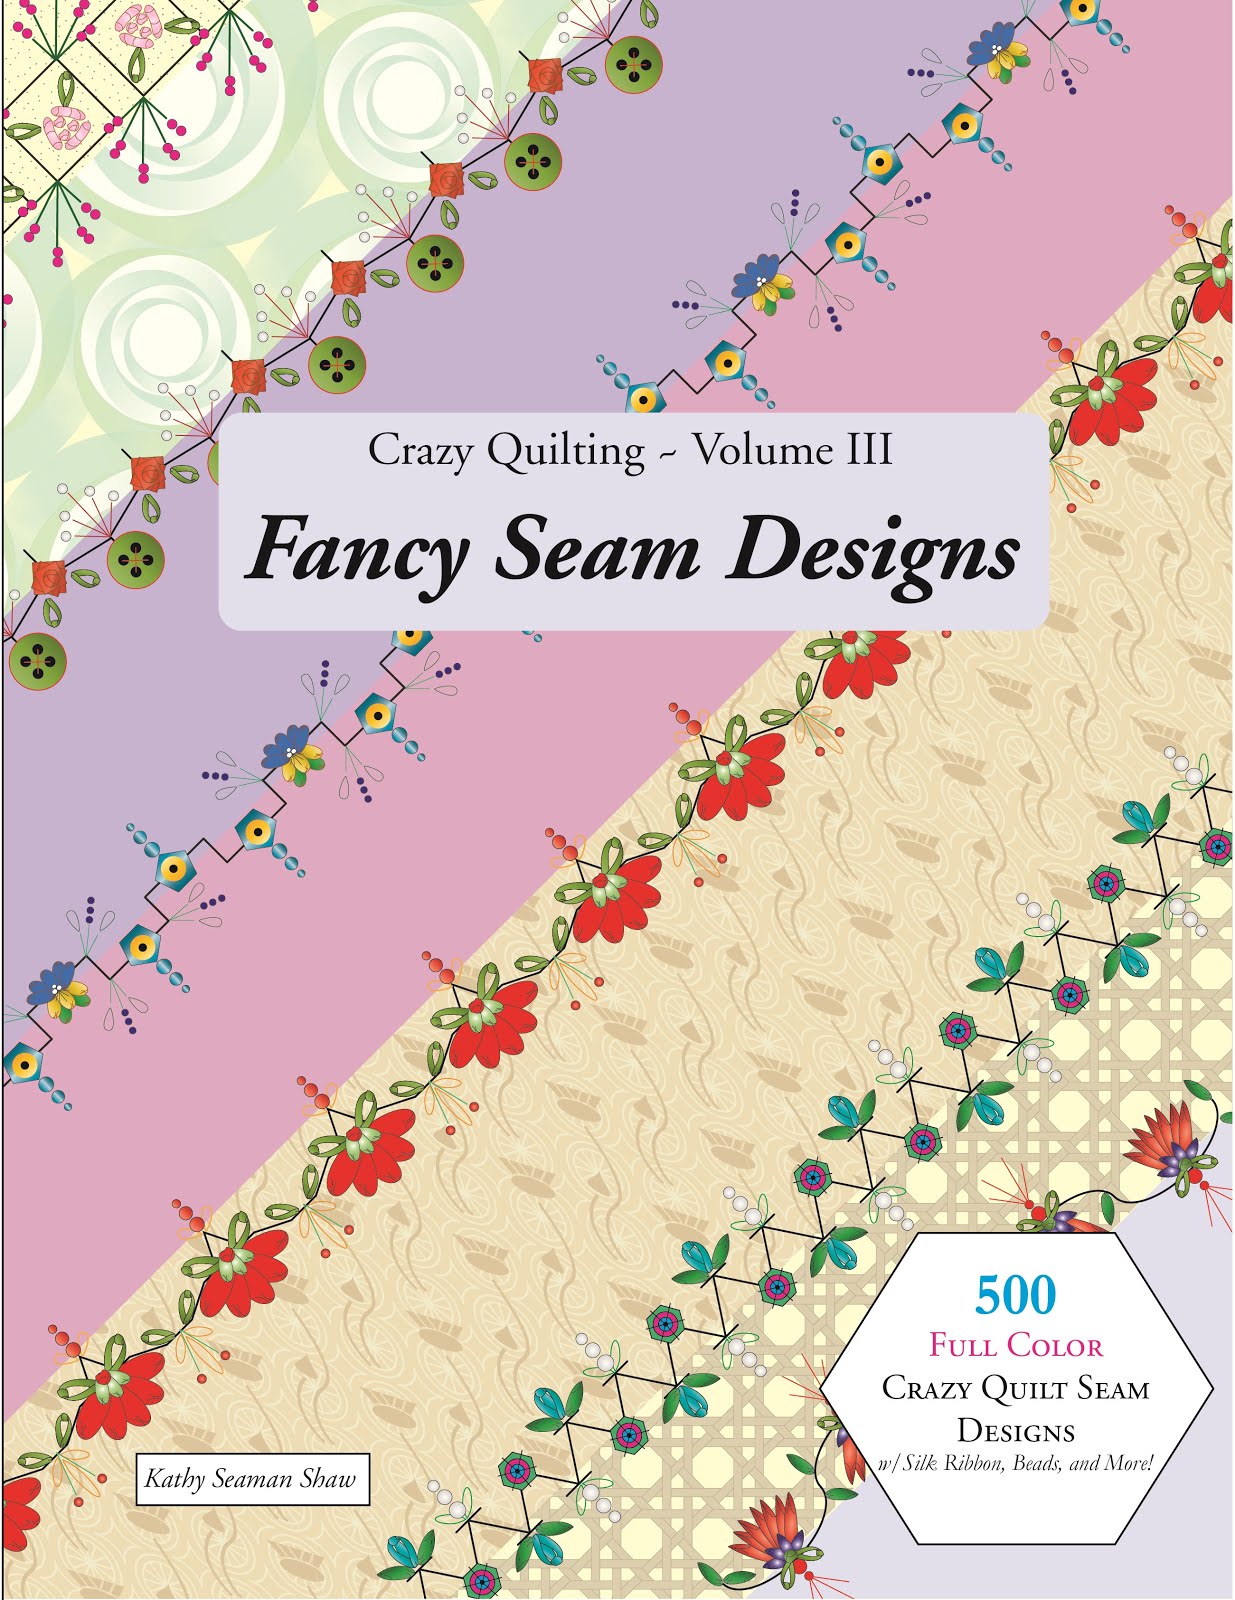 My Friend Kathy Shaw's Crazy Quilting Volume 3 Fancy Seam Designs Book